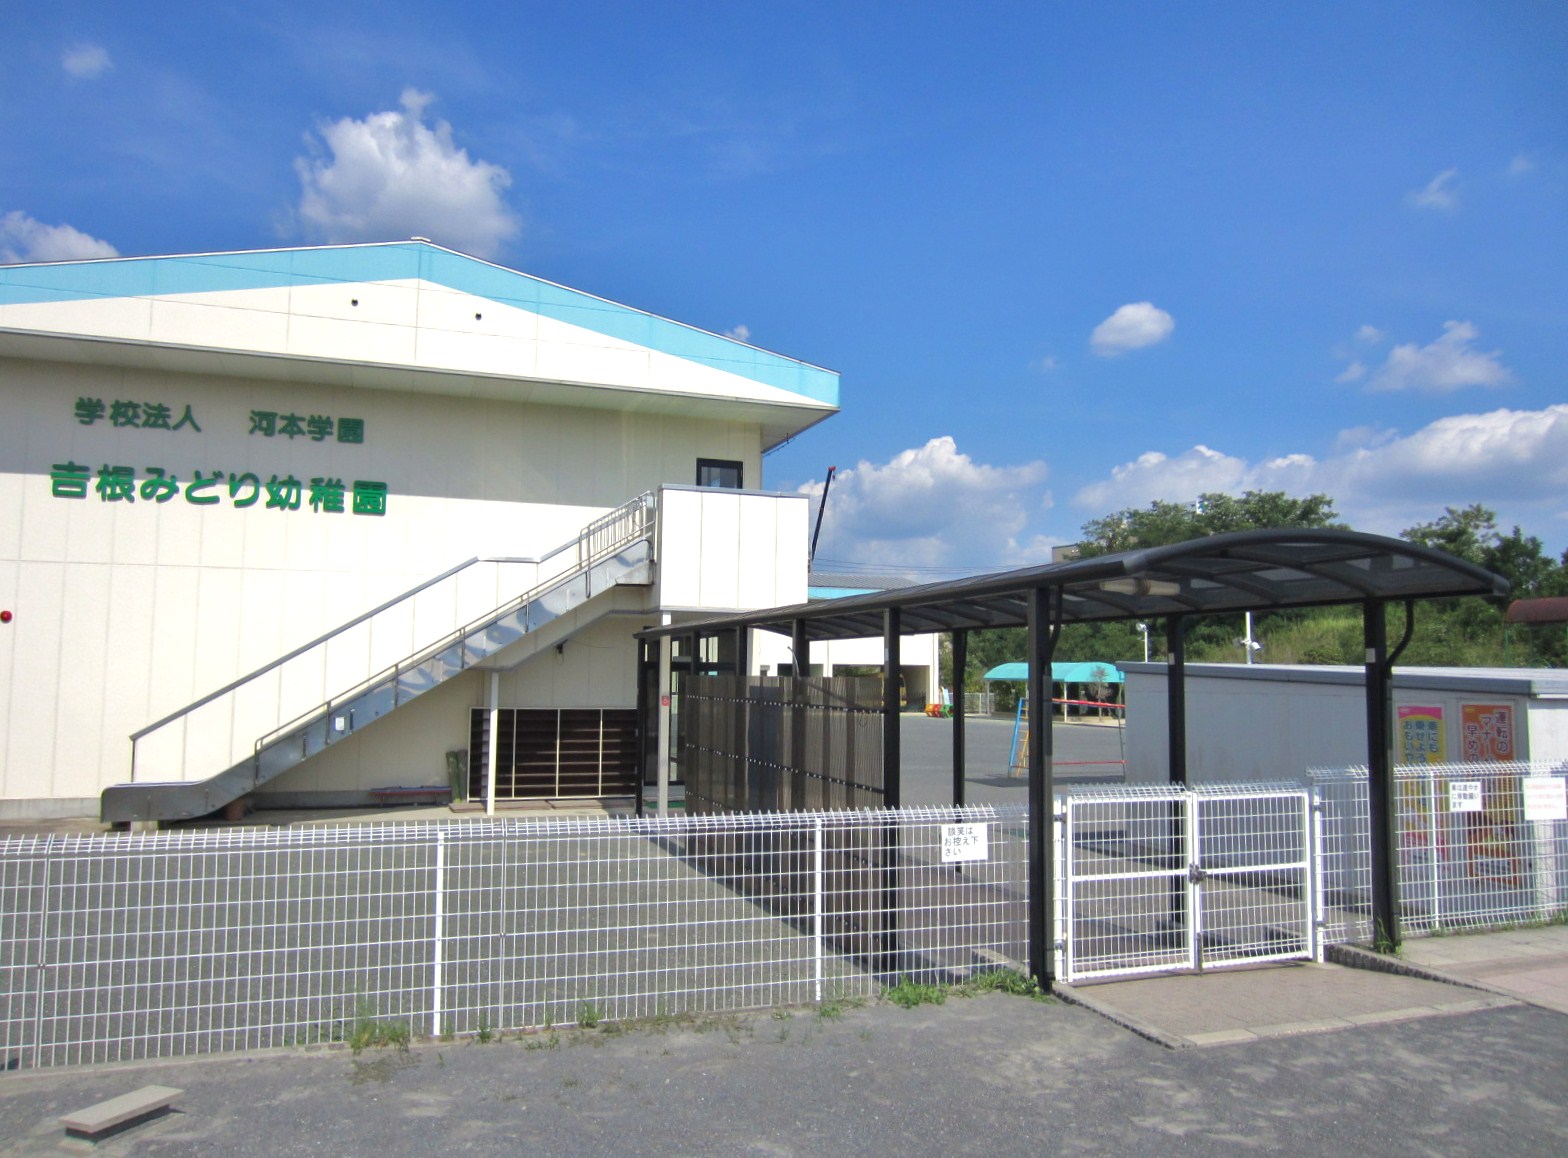 kindergarten ・ Nursery. Midori Yoshine kindergarten (kindergarten ・ 454m to the nursery)